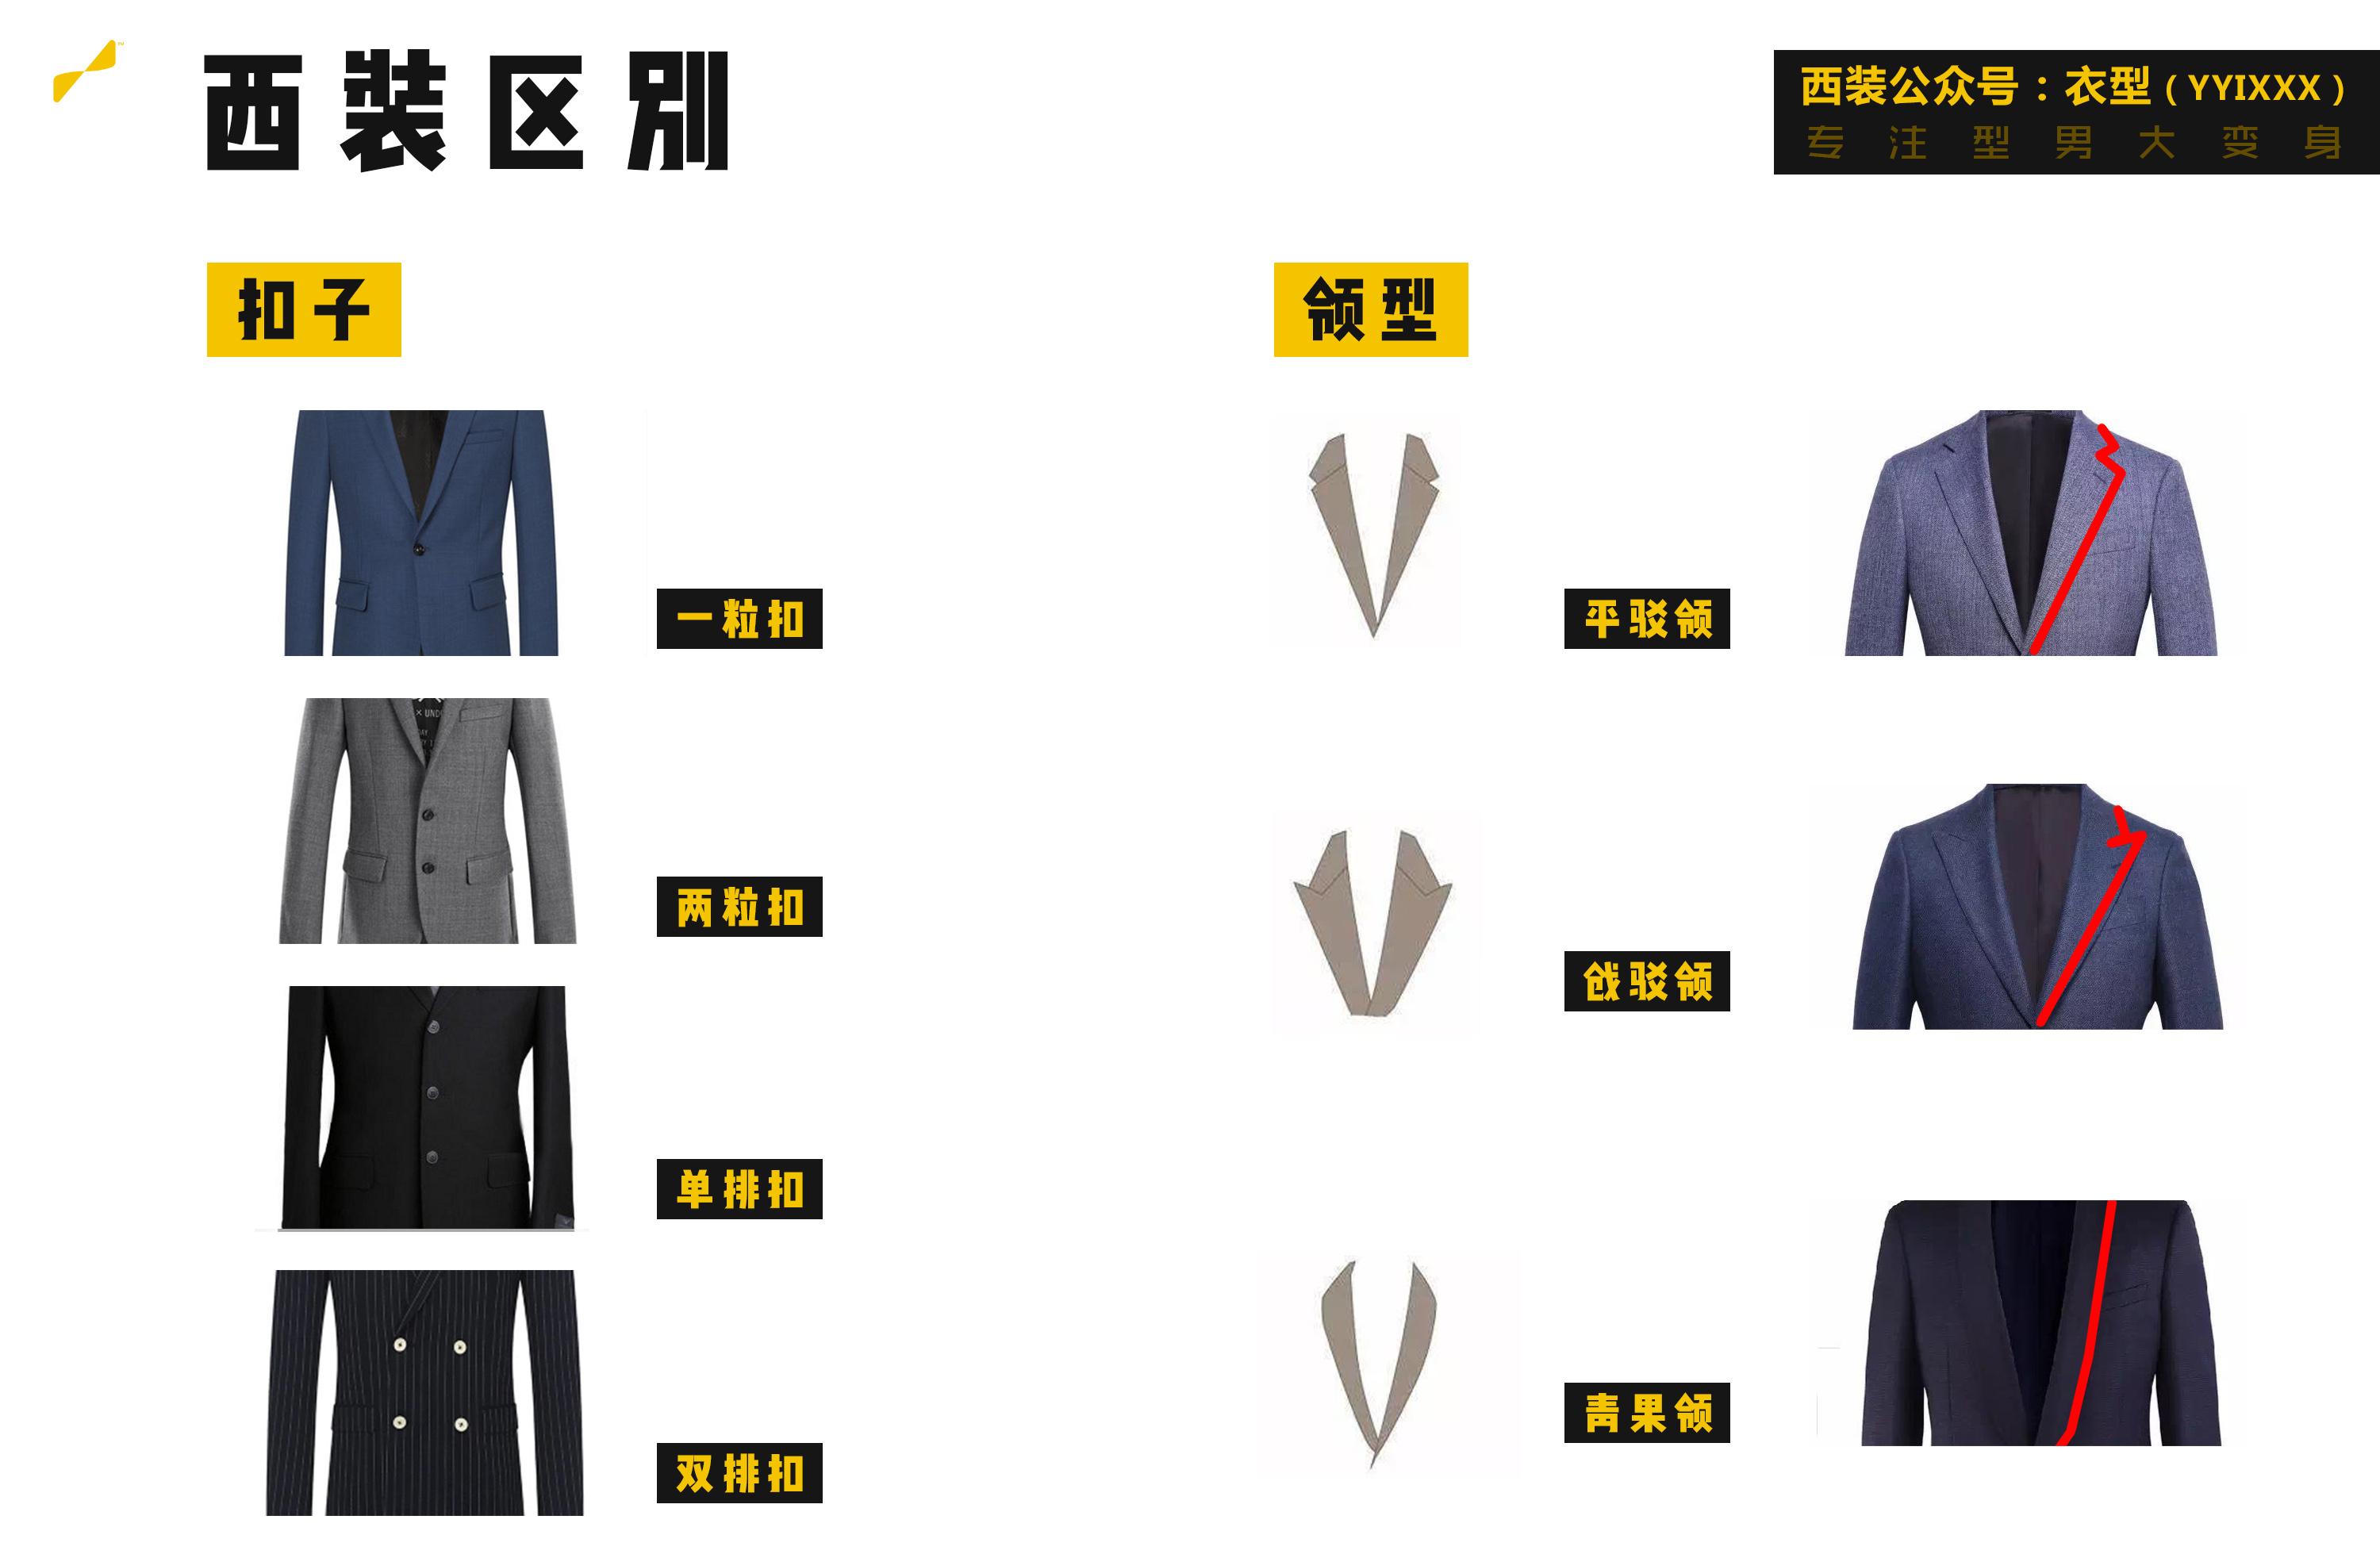 cc0可商用高清领带图片领结,商人,时尚,男人-千叶网